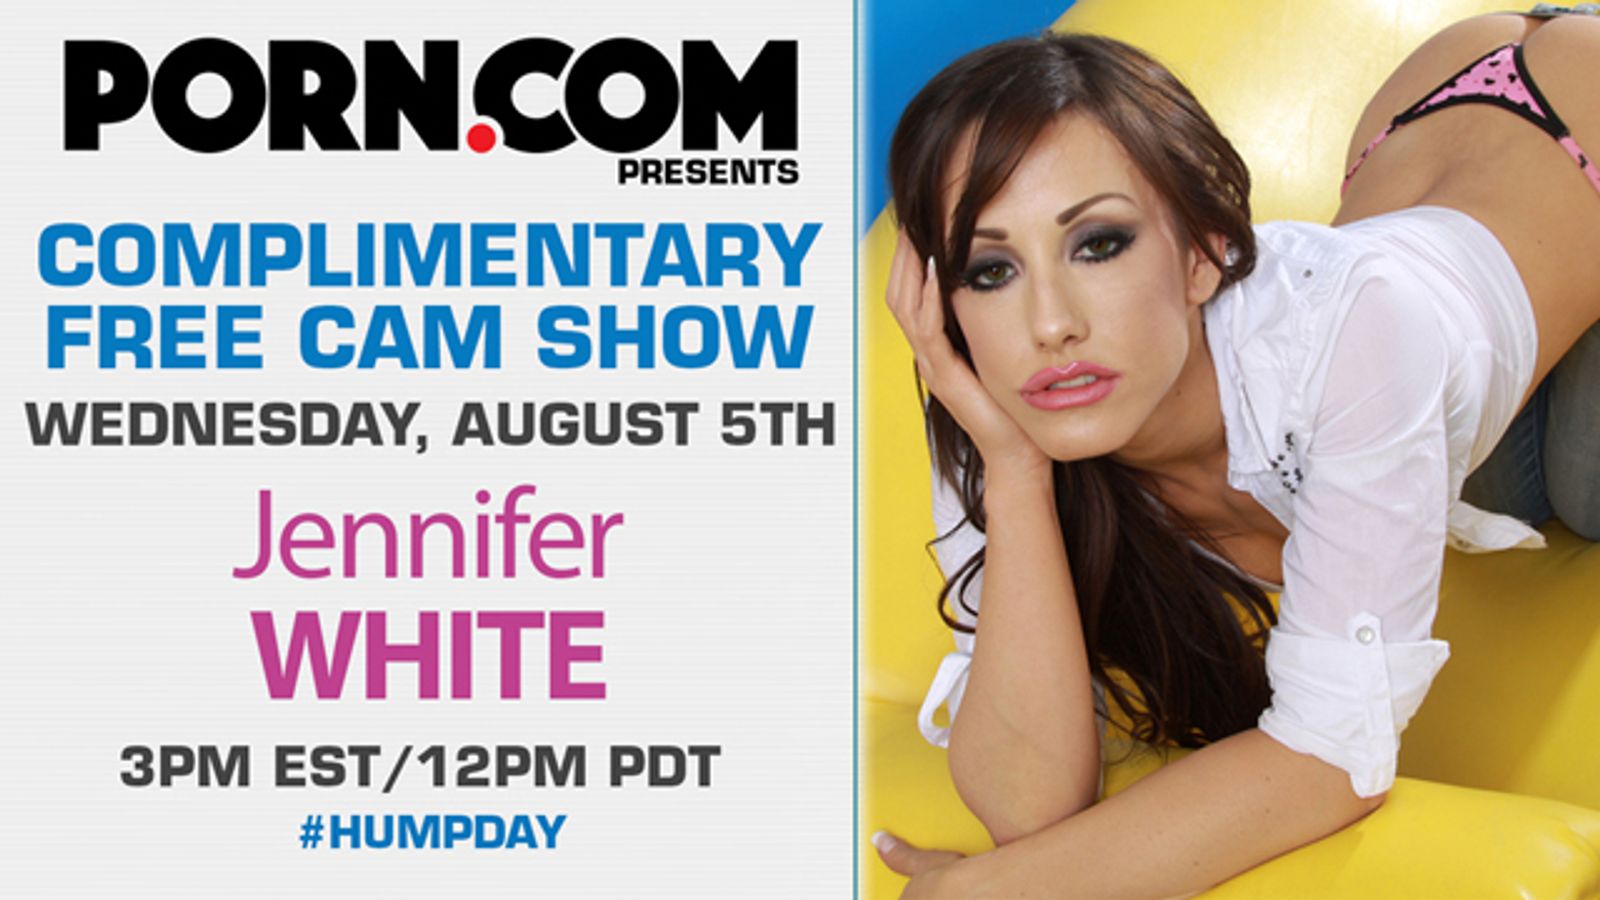 Jennifer White Returns for Free Wednesday Livecam Show on Porn.com